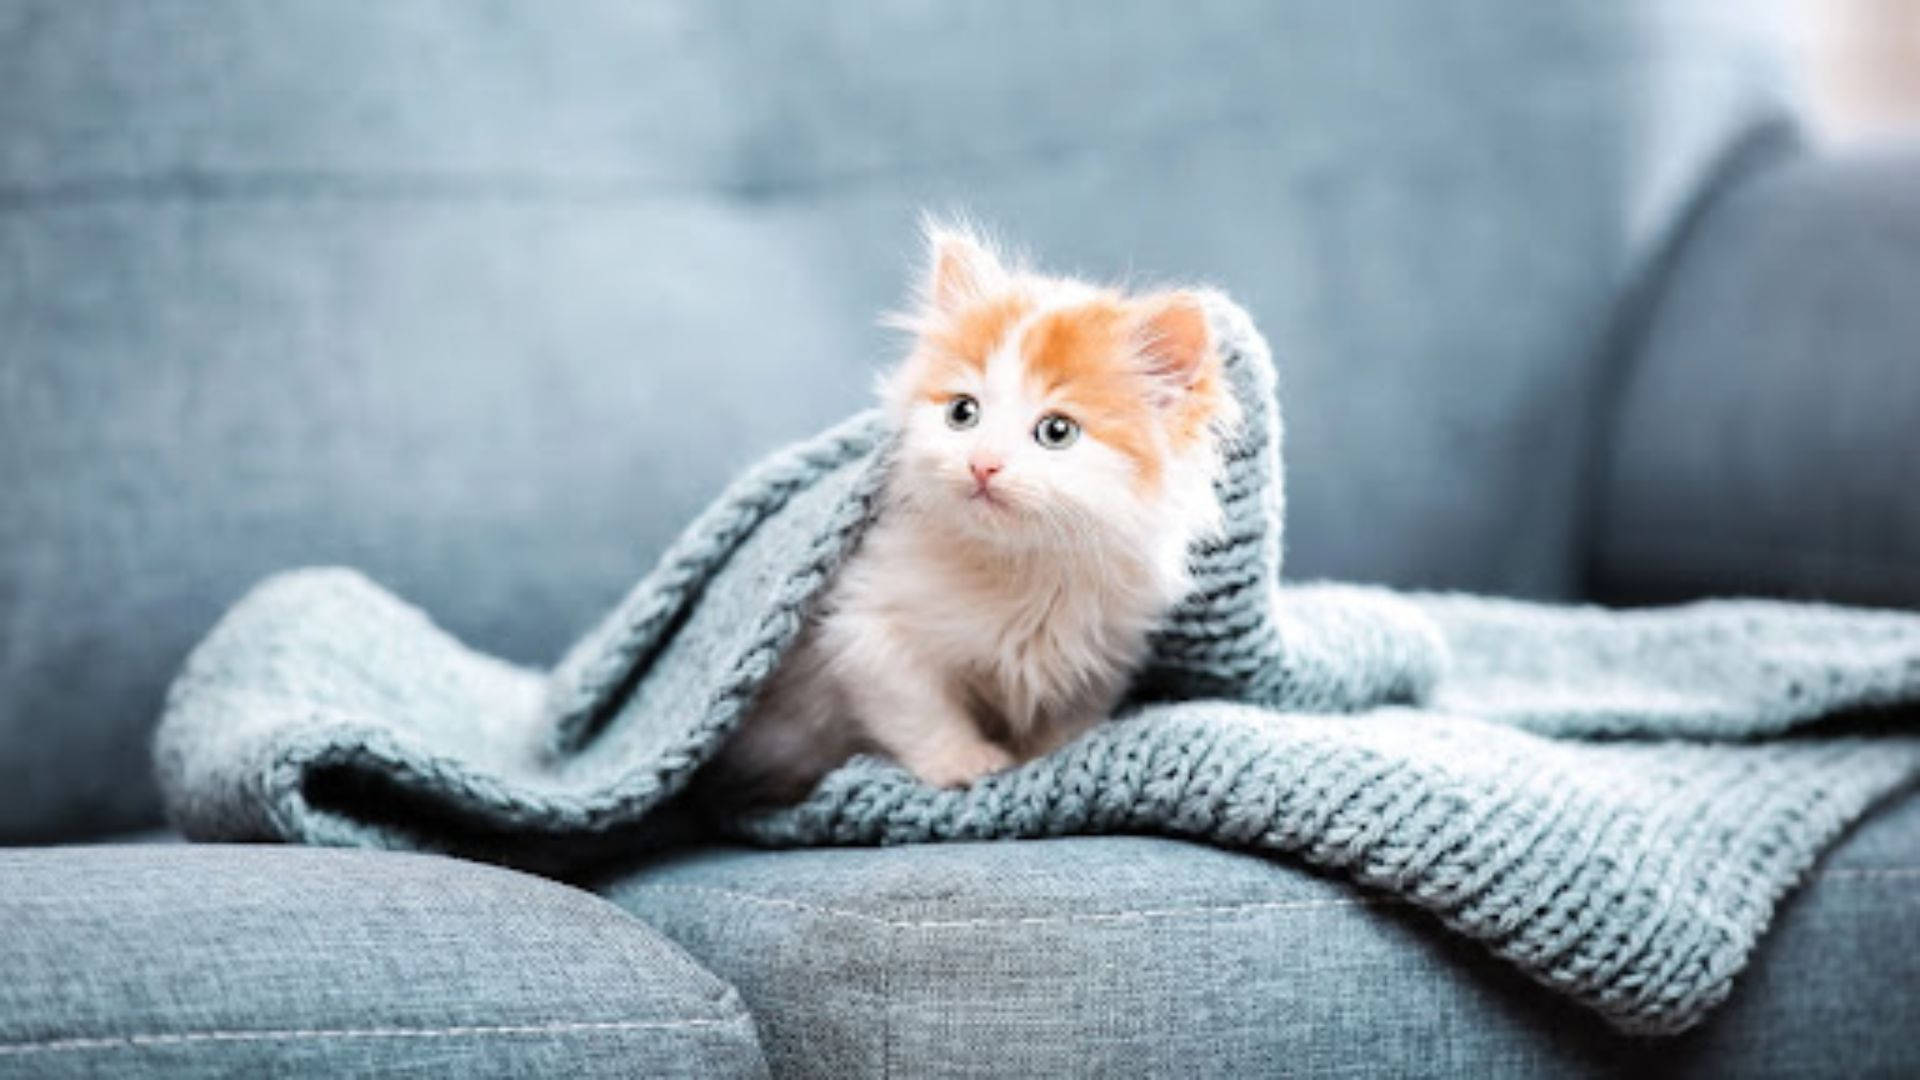 Aesthetic Cat In Sofa